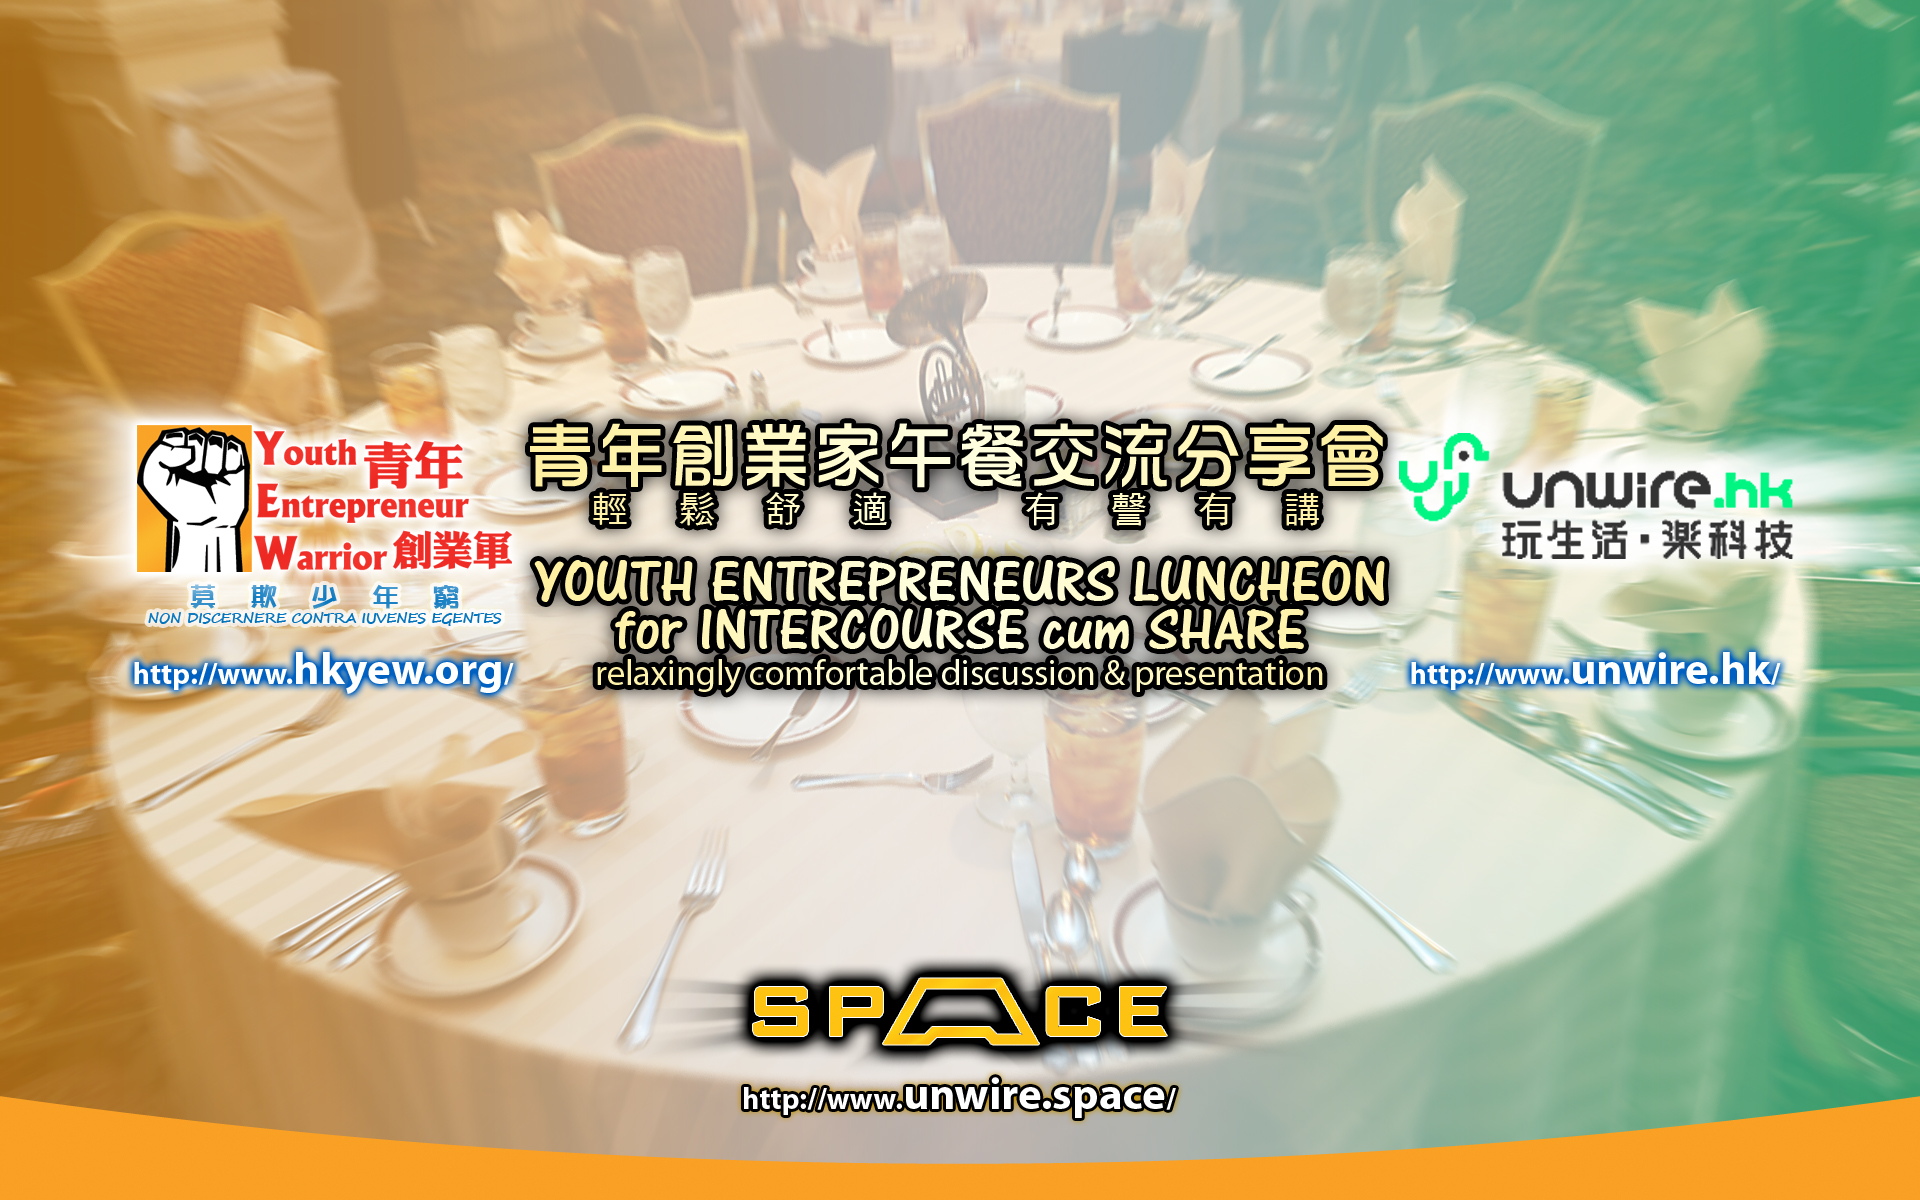 青年創業軍最新創業活動: 青年創業家探訪交流活動系列。Unwire午餐聚 (名額已爆滿)